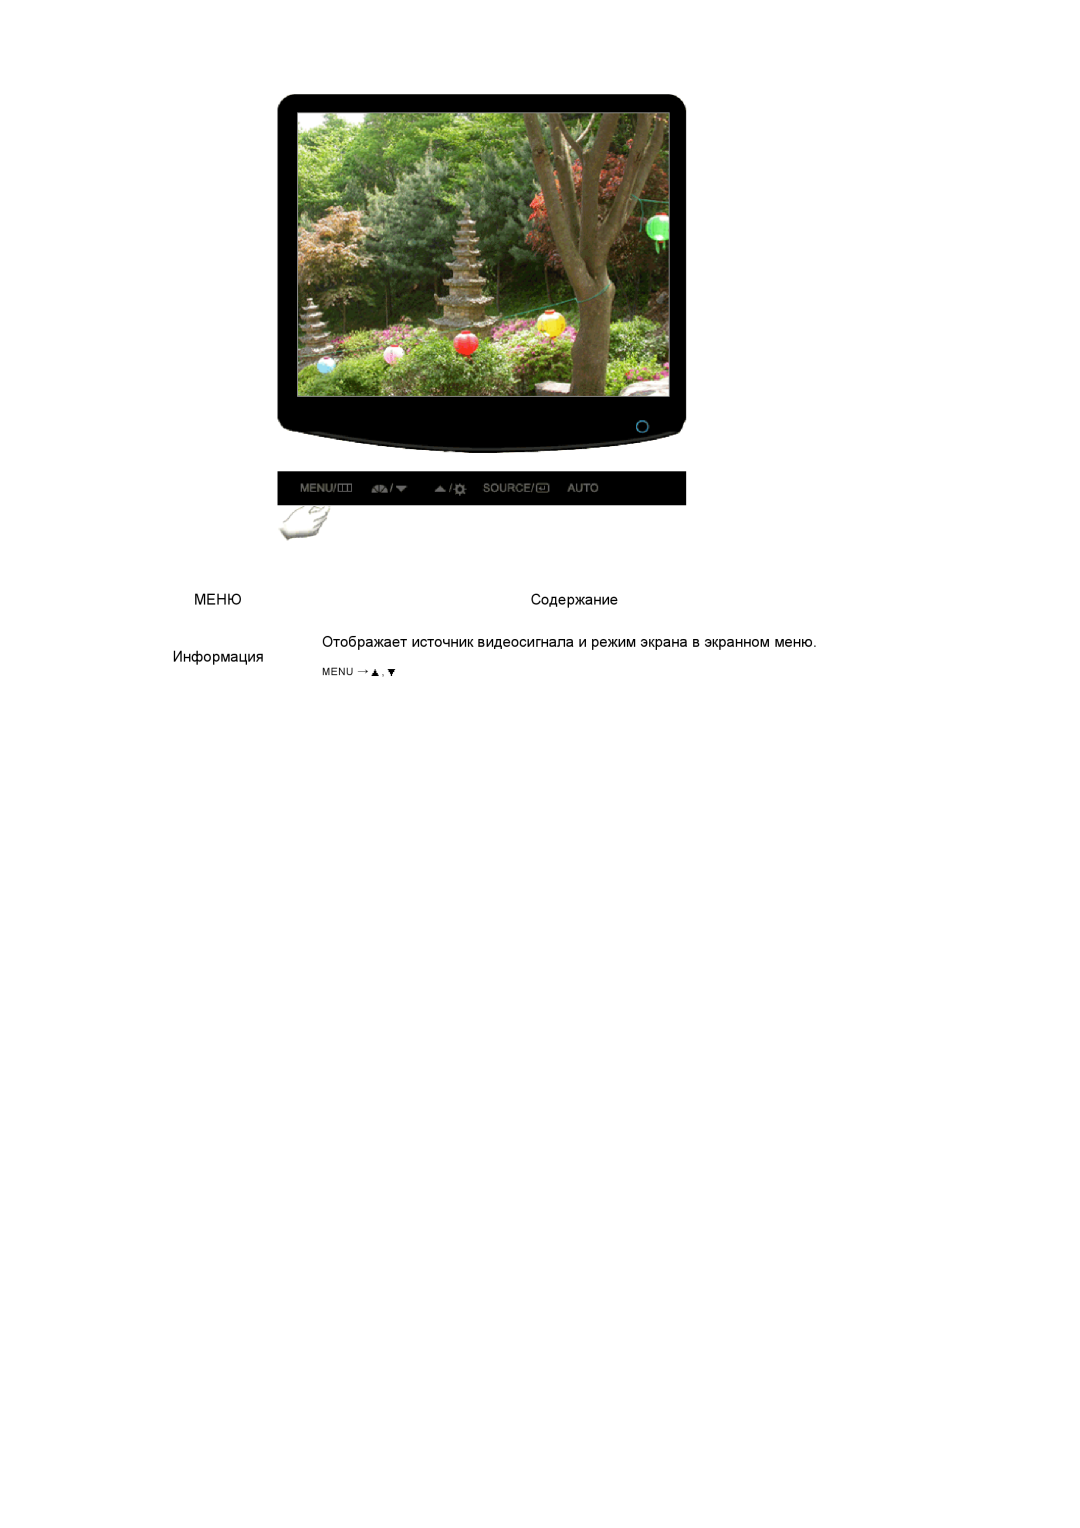 Samsung LS20PEBSFV/EDC manual Меню, Содержание, Отображает источник видеосигнала и режим экрана в экранном меню, Информация 